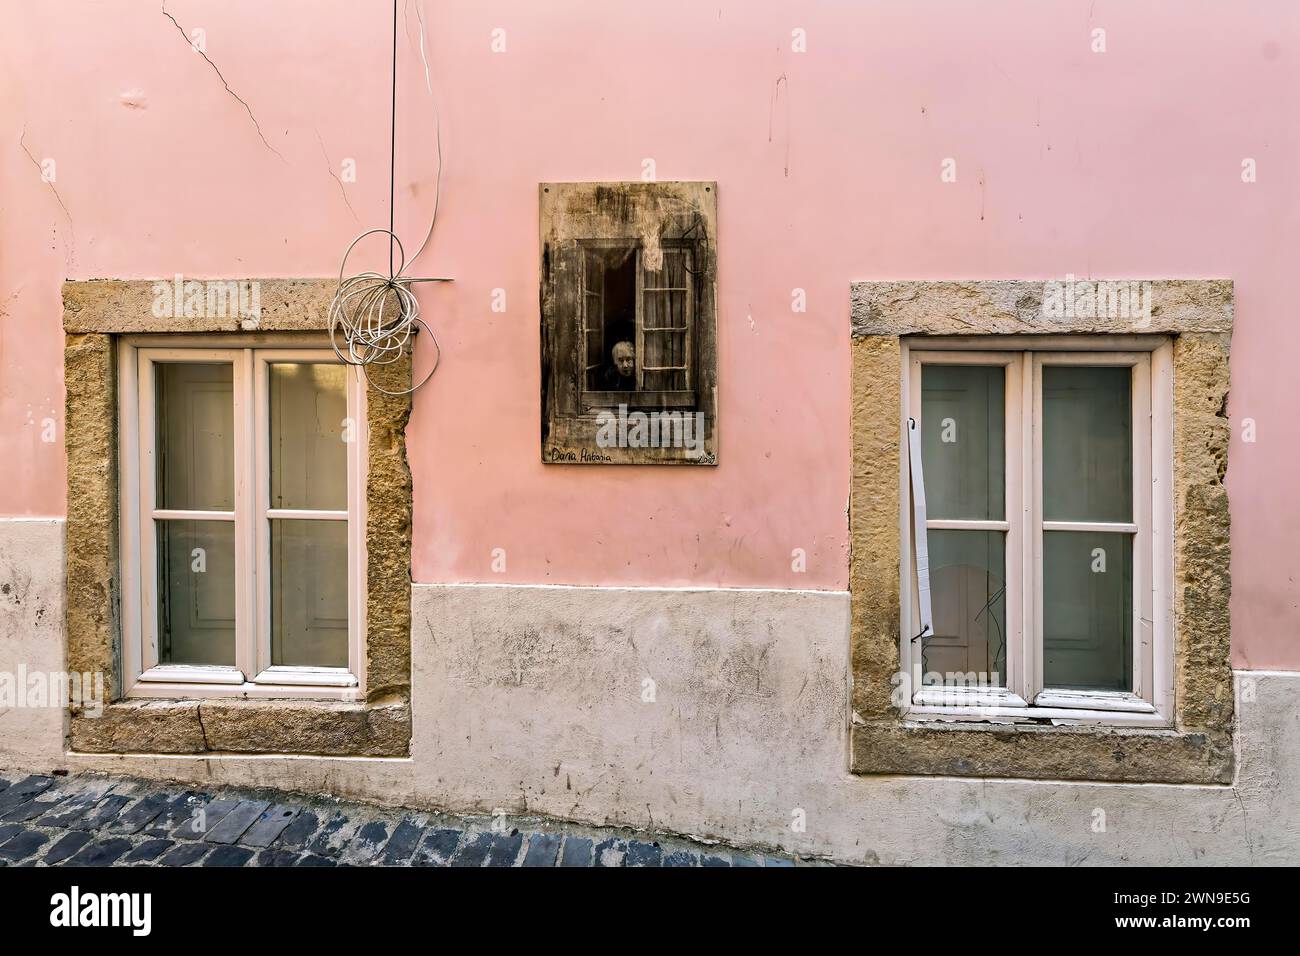 Façade d'un ancien bâtiment avec des murs rose pastel et des fenêtres en pierre avec volets en bois fermés, Alfama, Lisbonne Banque D'Images